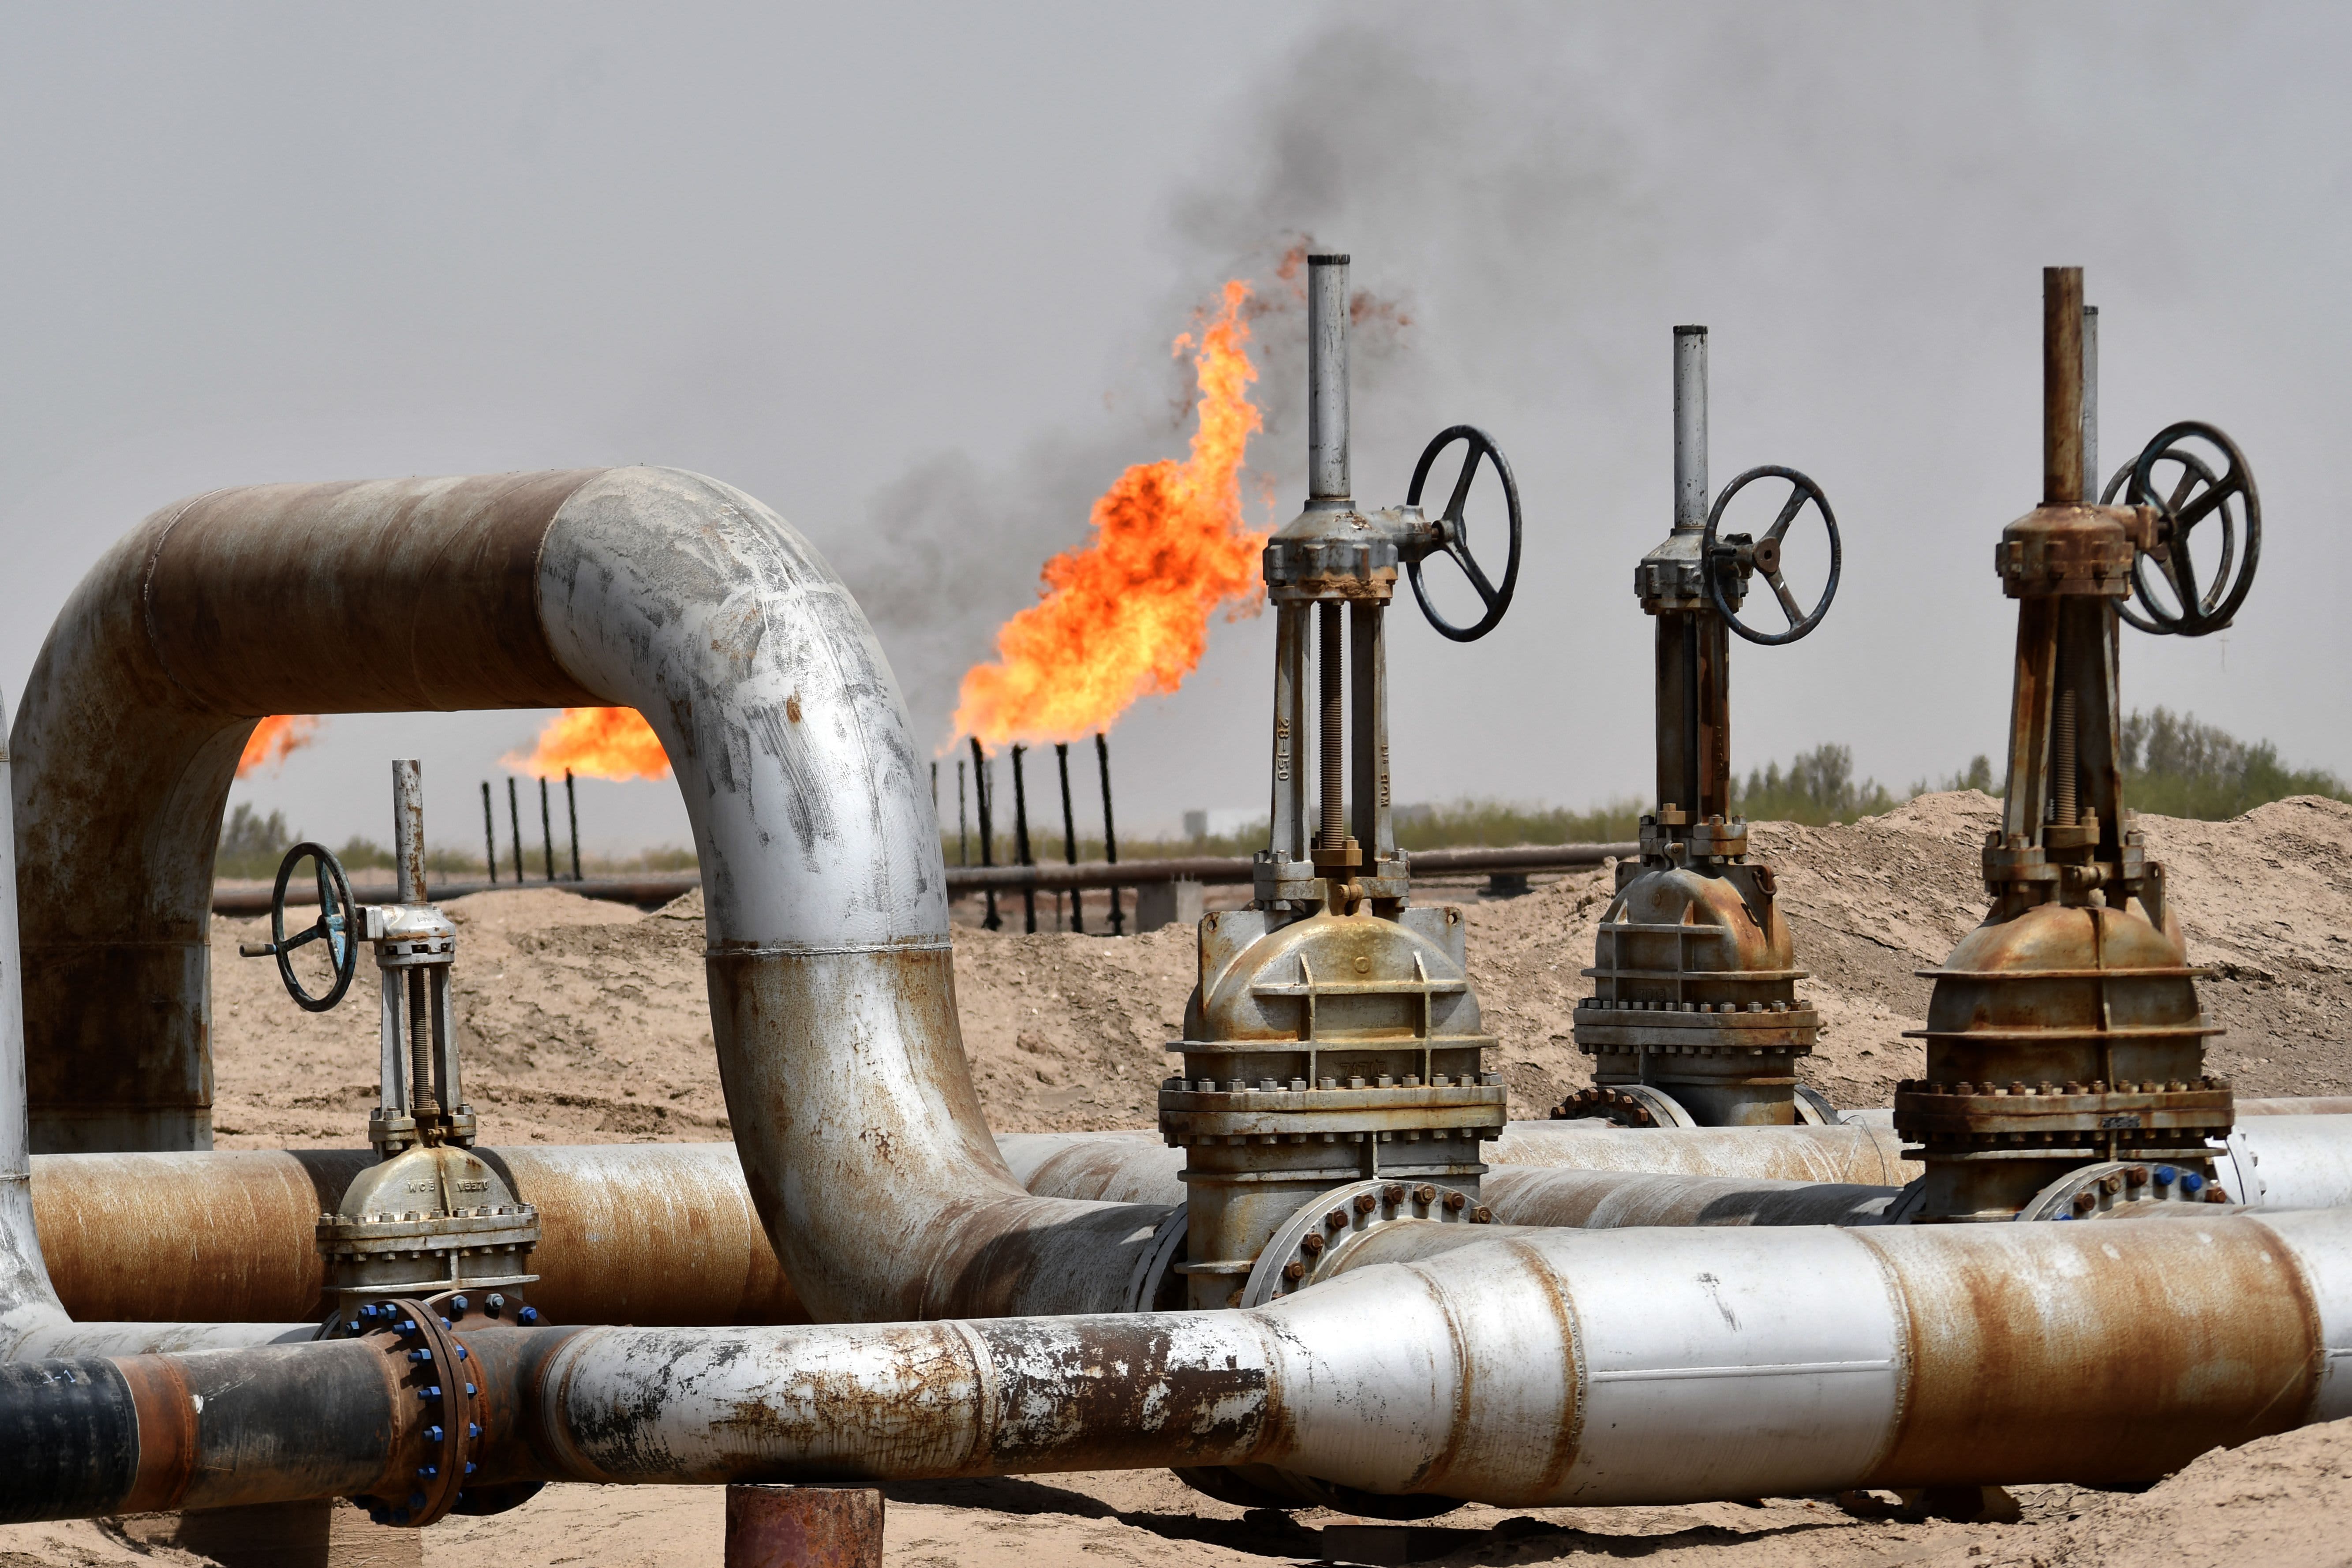 Les actions énergétiques grimpent sur les rapports de réductions de production de l'OPEP+.  Voici comment nous répondons 